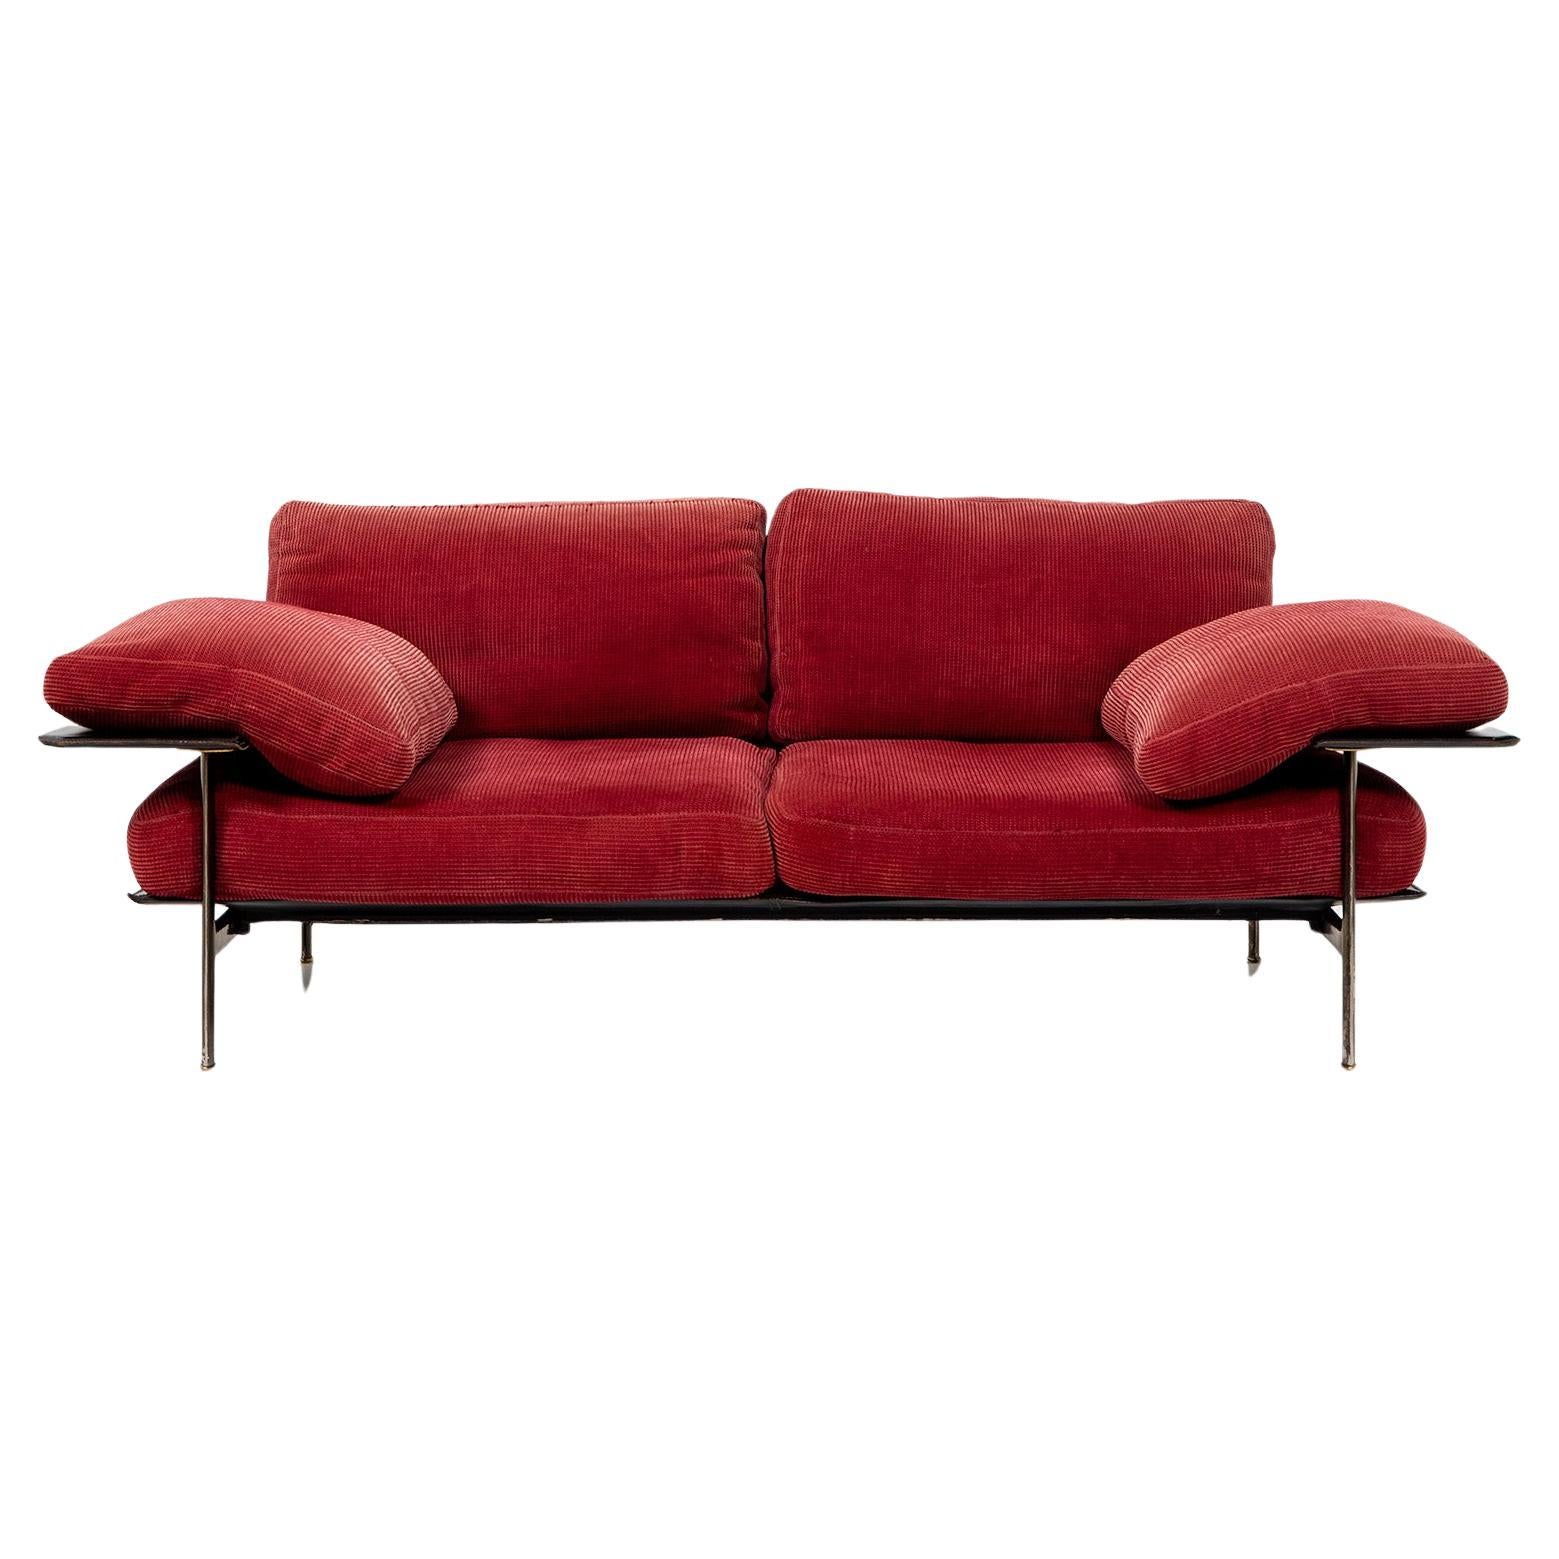 Paire de canapés à deux places, modèle Design/One, conçus par Antonio Citterio et Paolo Nova pour B&B Italia. Les canapés reposent sur un cadre métallique et sont équipés de coussins épais. Le tissu d'ameublement rouge est légèrement texturé et en